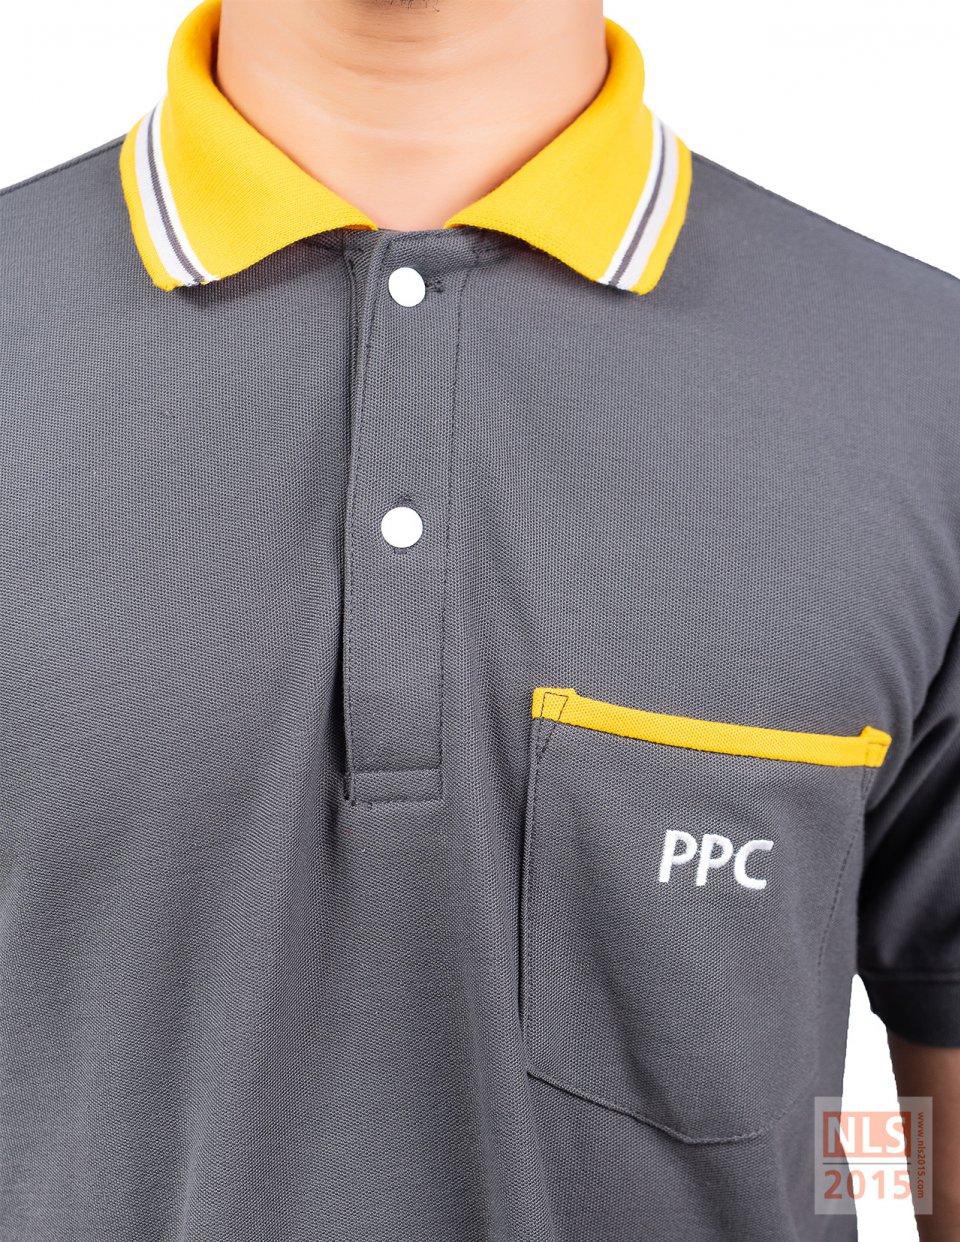 ตัวอย่างเสื้อโปโลยูนิฟอร์มพนักงานบริษัท PPC / นลินสิริโรงงานผลิตเสื้อโปโลพนักงาน รับตัดยูนิฟอร์มพนักงานรูปที่ 